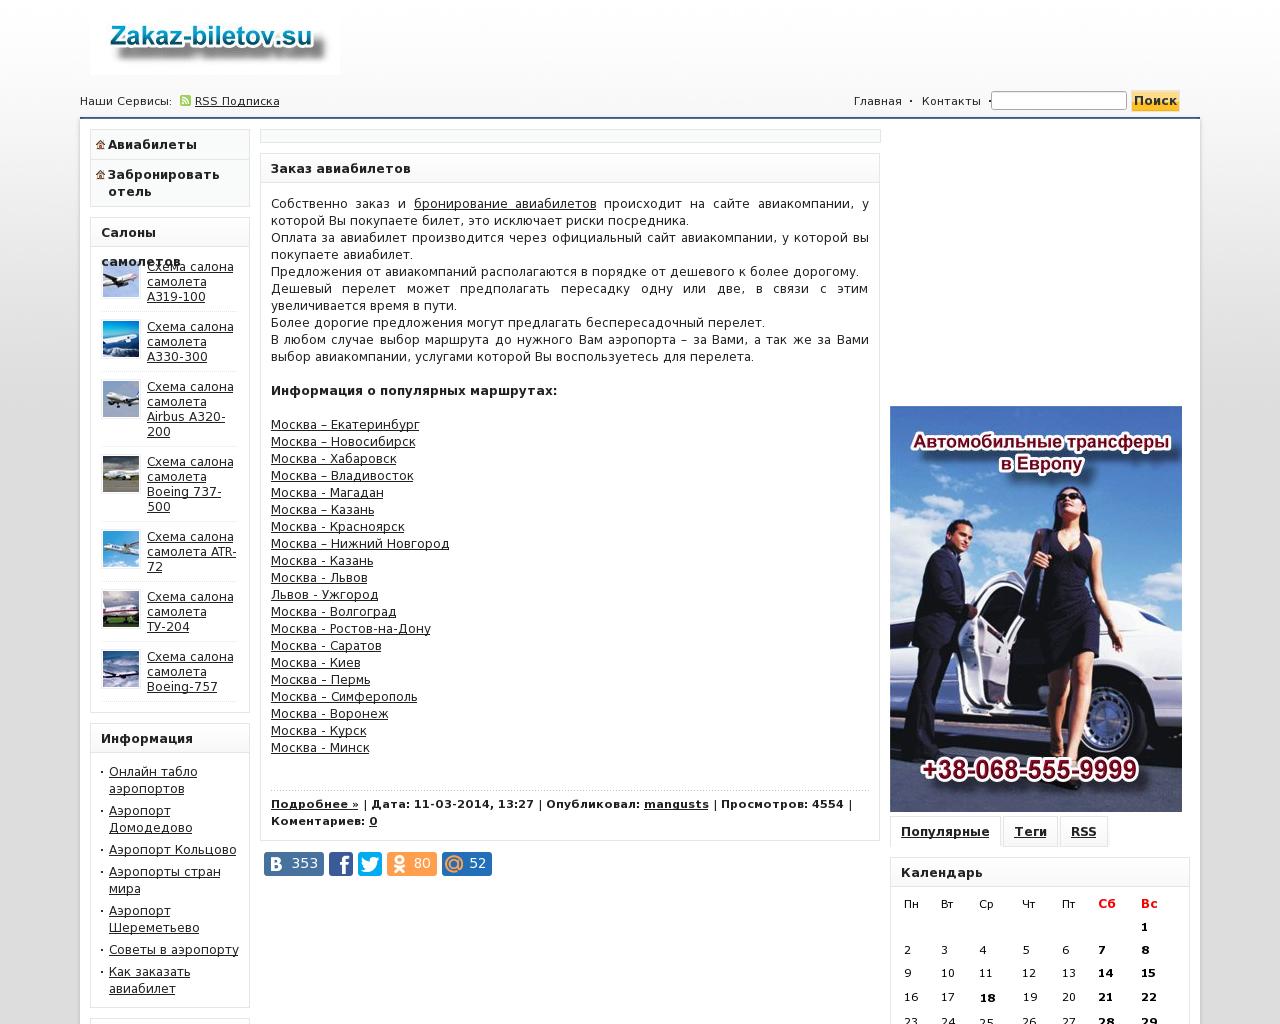 Изображение сайта zakaz-biletov.su в разрешении 1280x1024